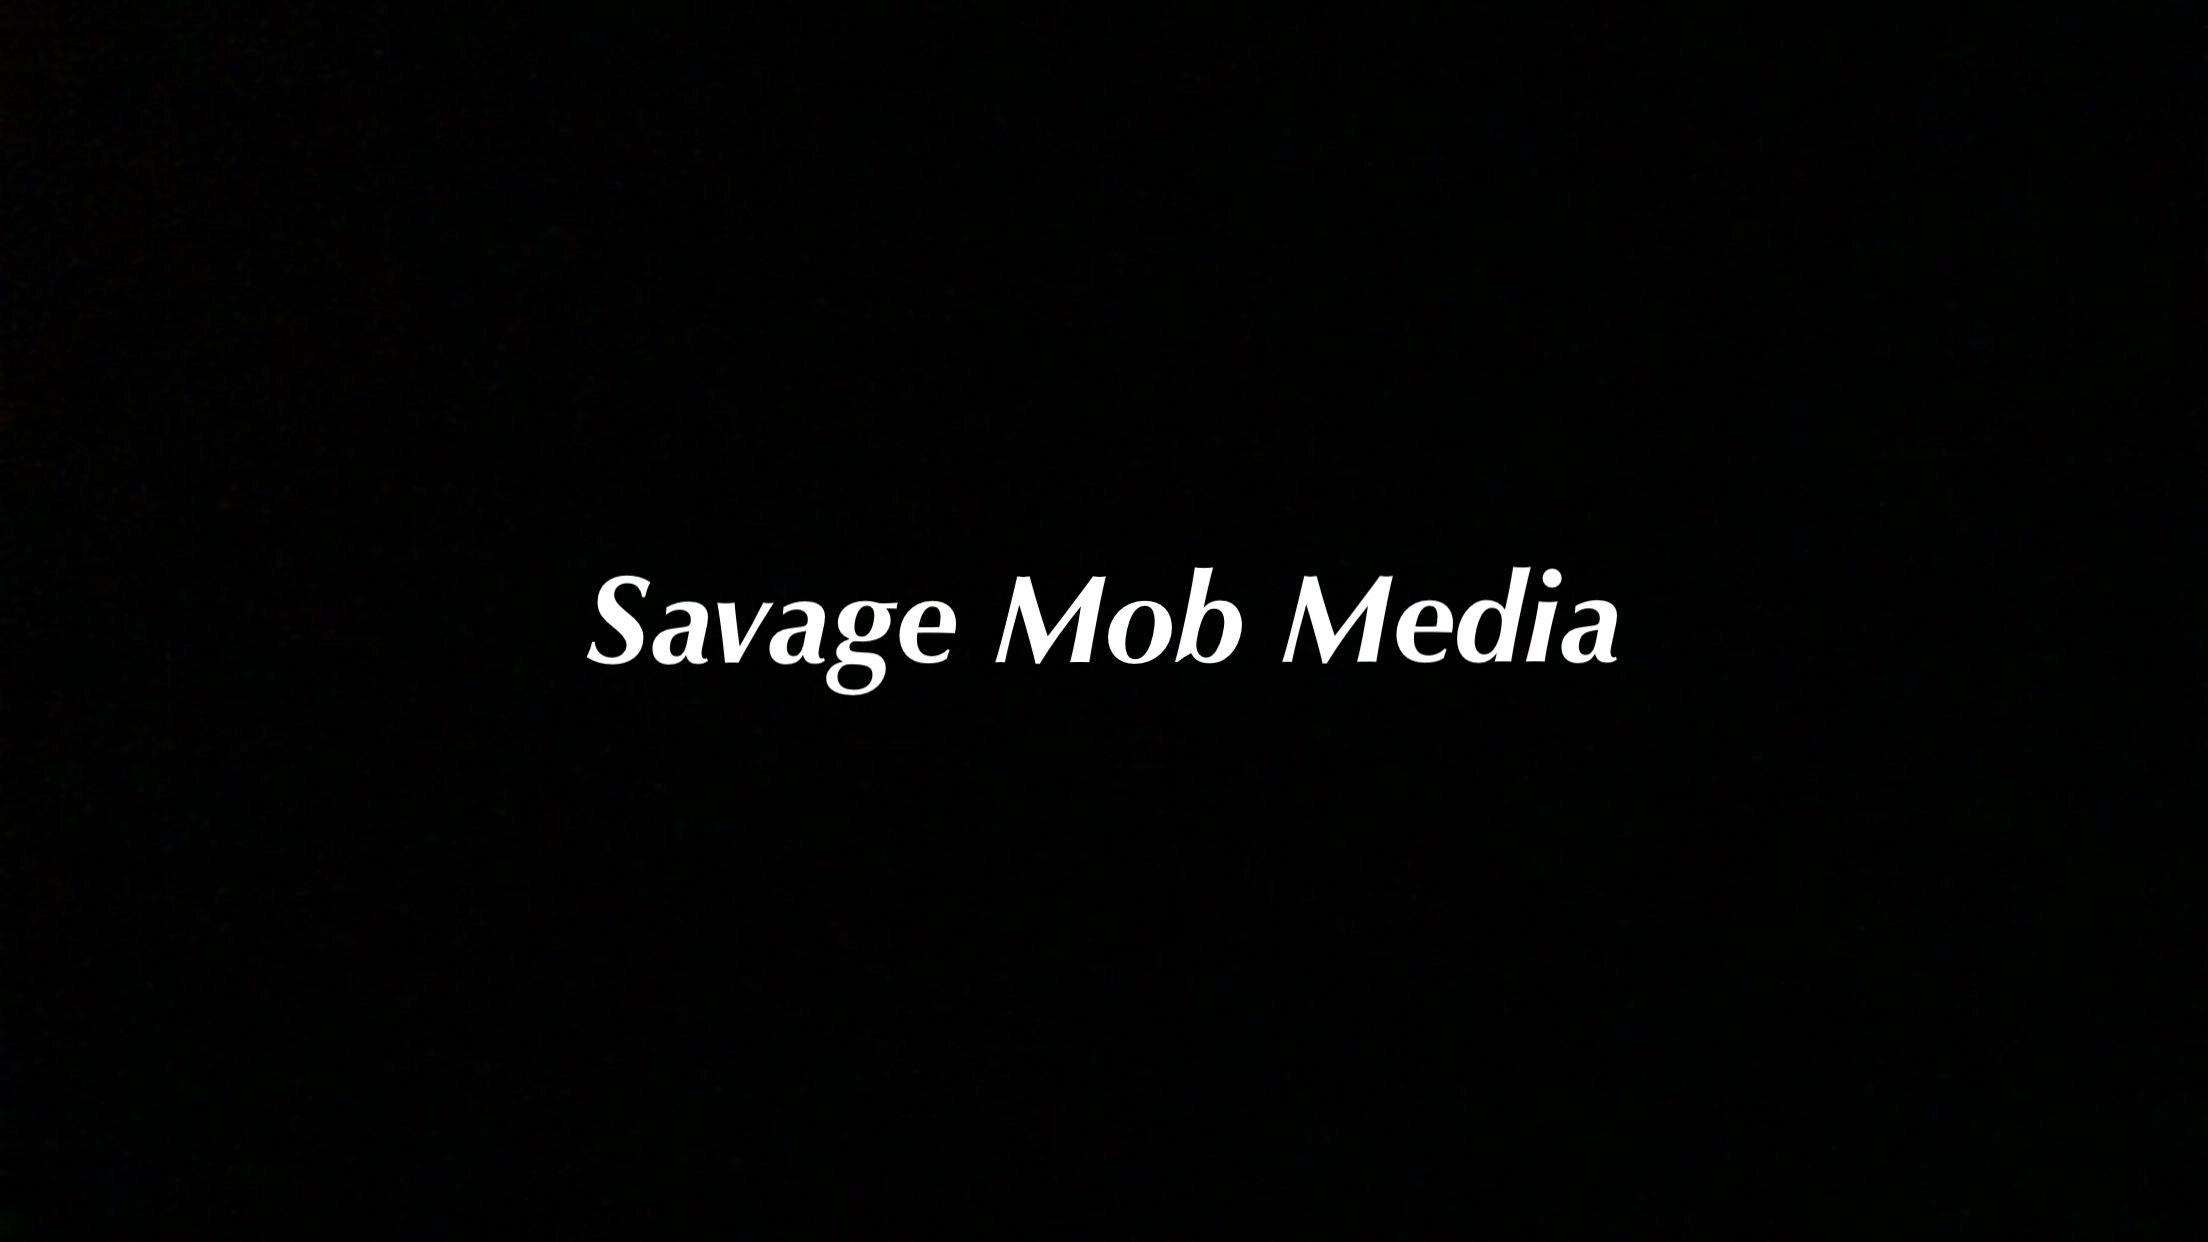 Savage Mob Logo - Free Savage Mob Media Mixtape Downloads | Spinrilla